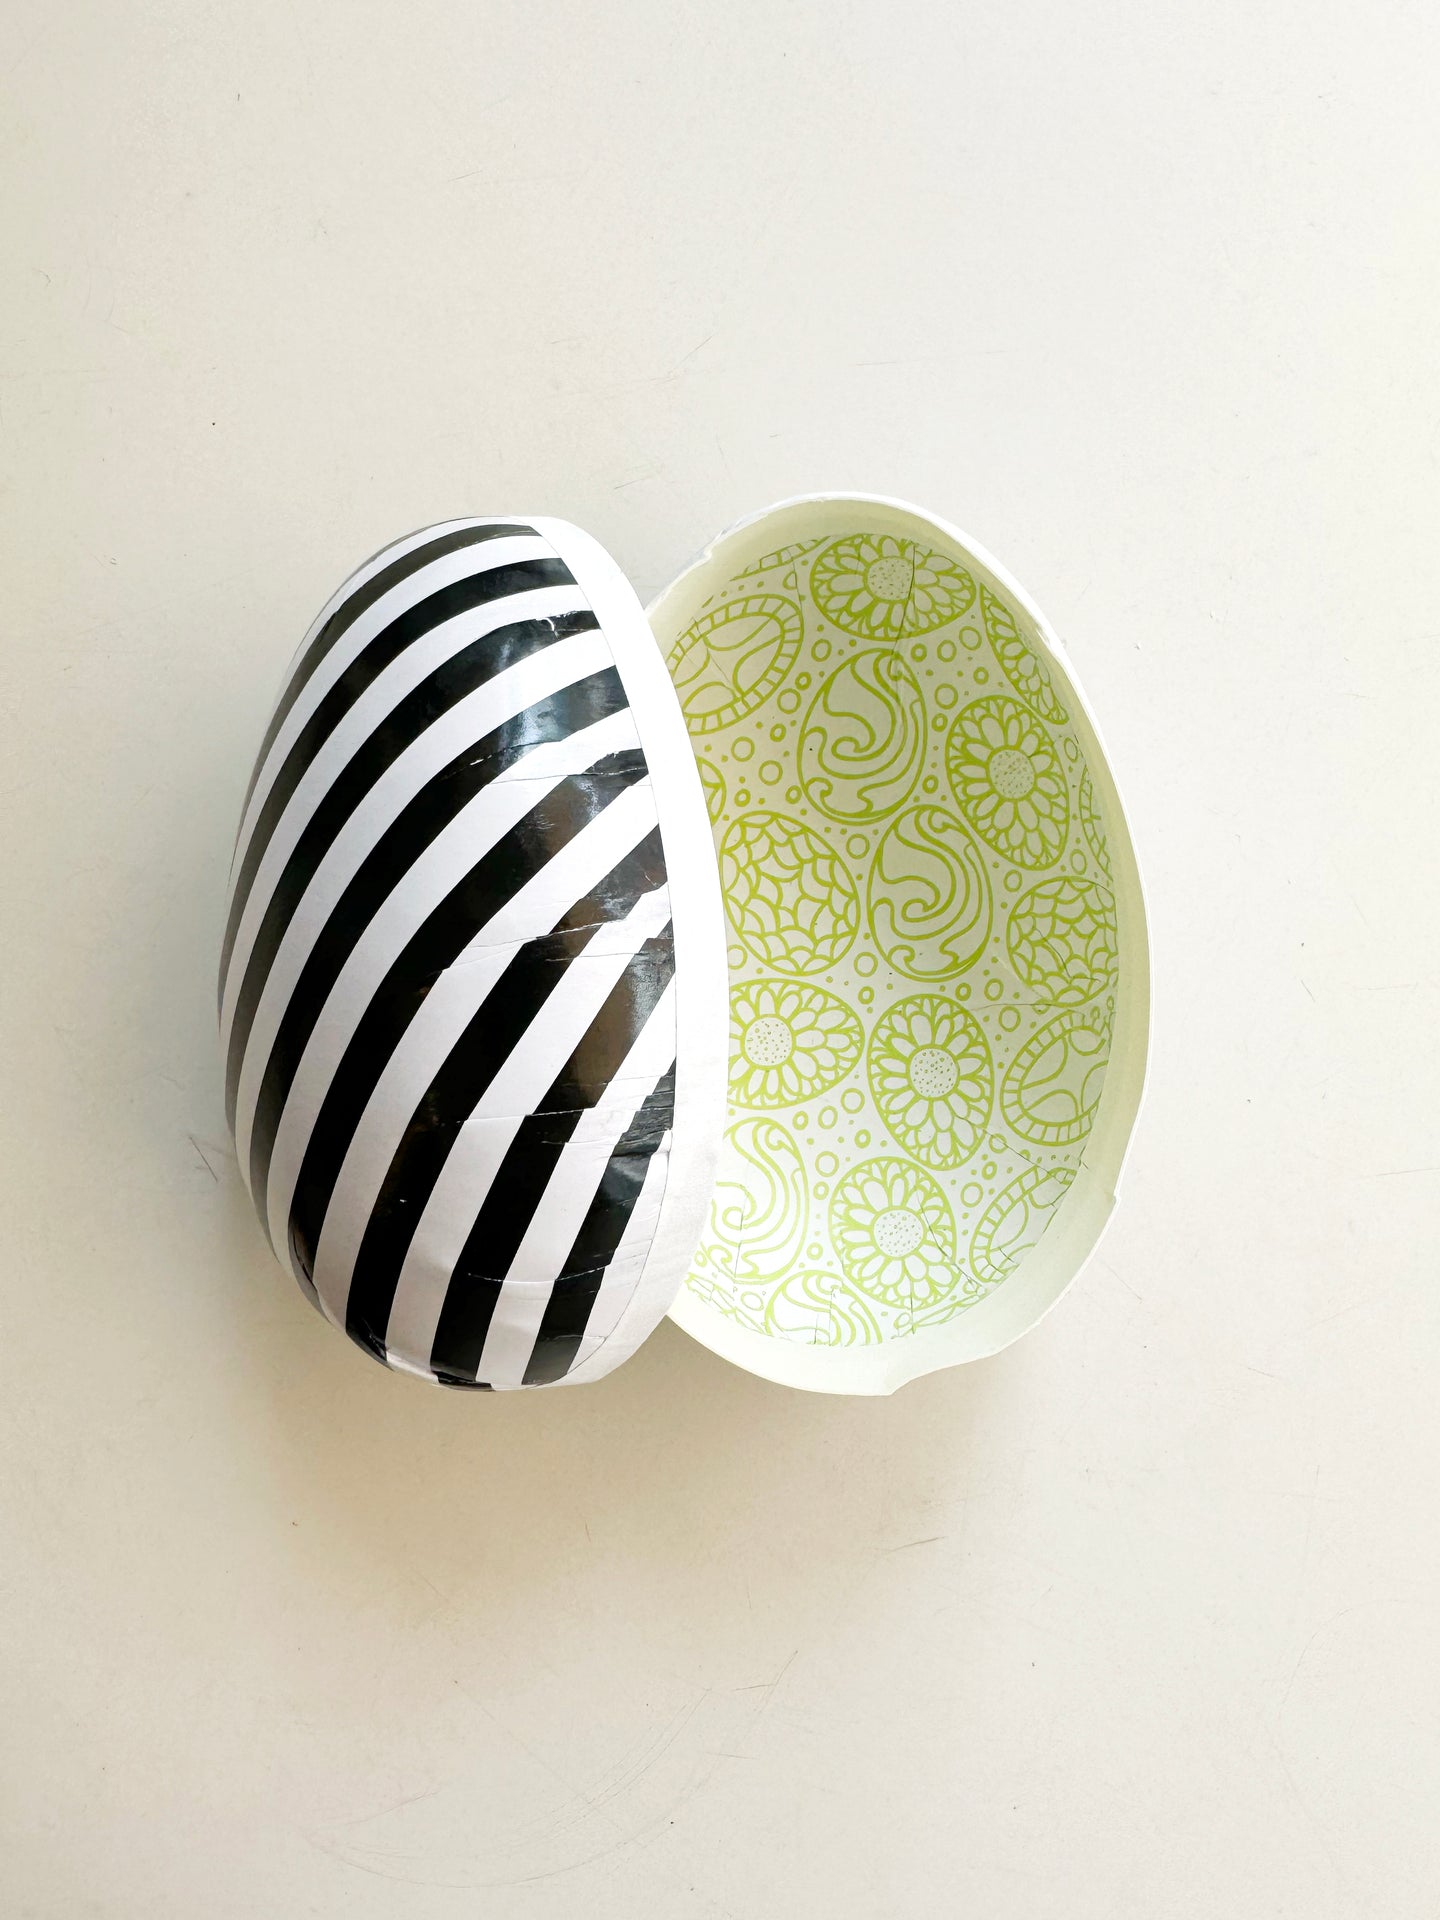 Påskägg – Striped Easter Egg / Small